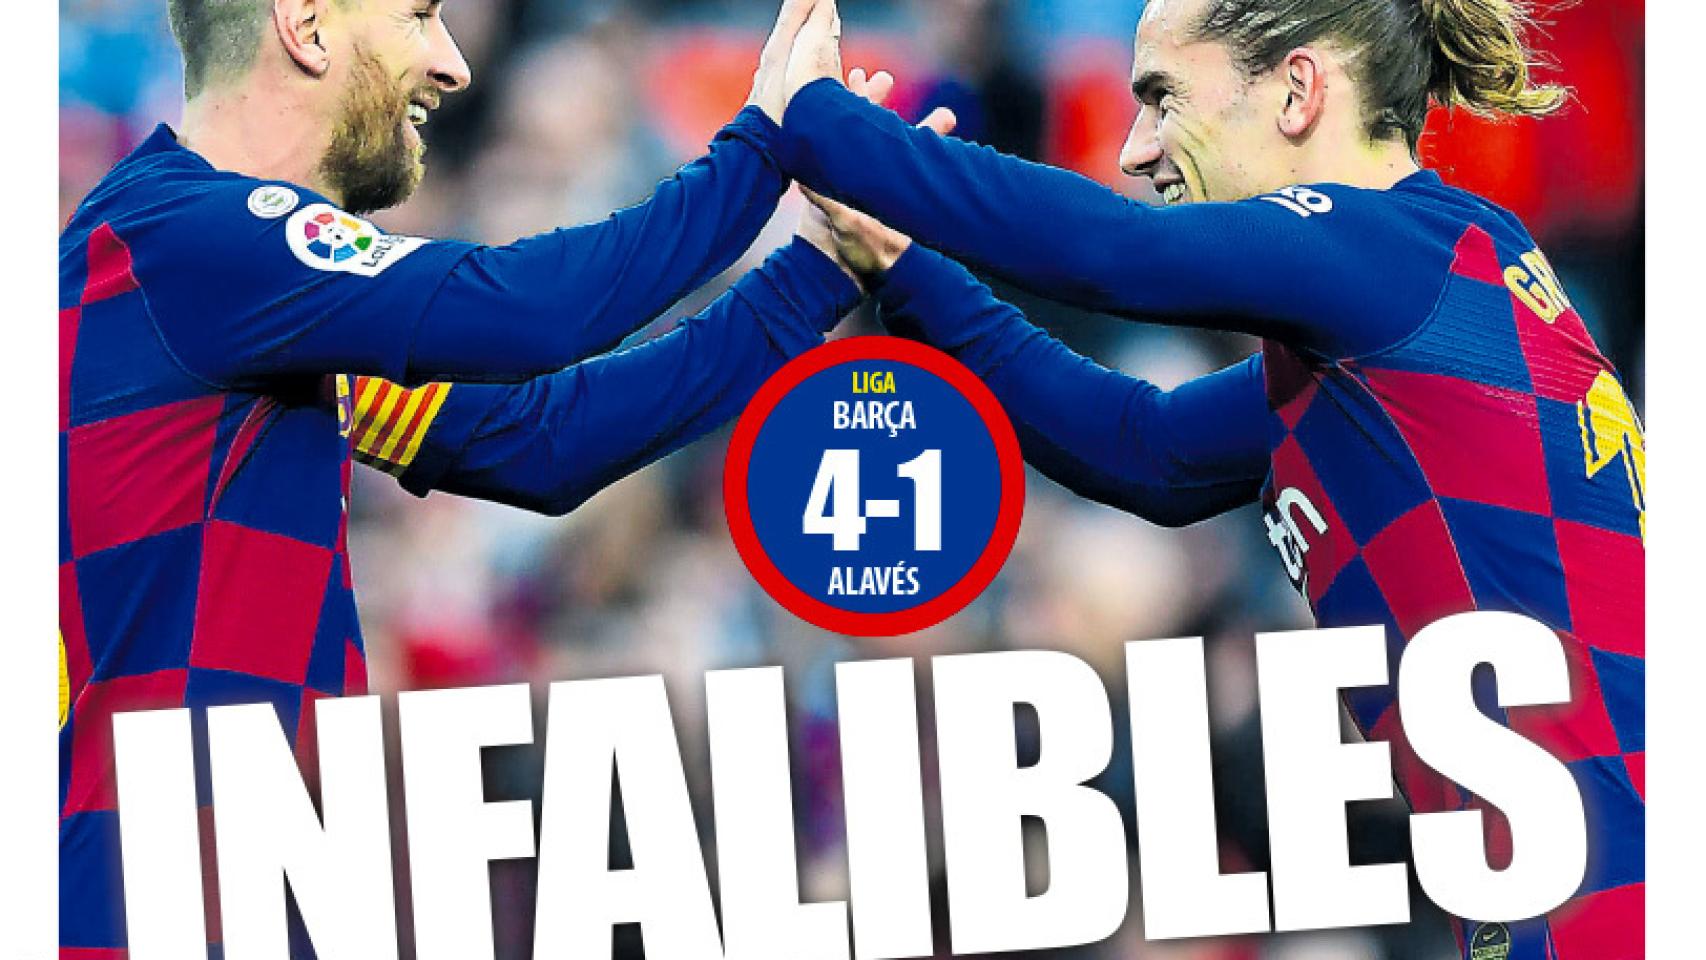 La portada del diario Mundo Deportivo (22/12/2019)